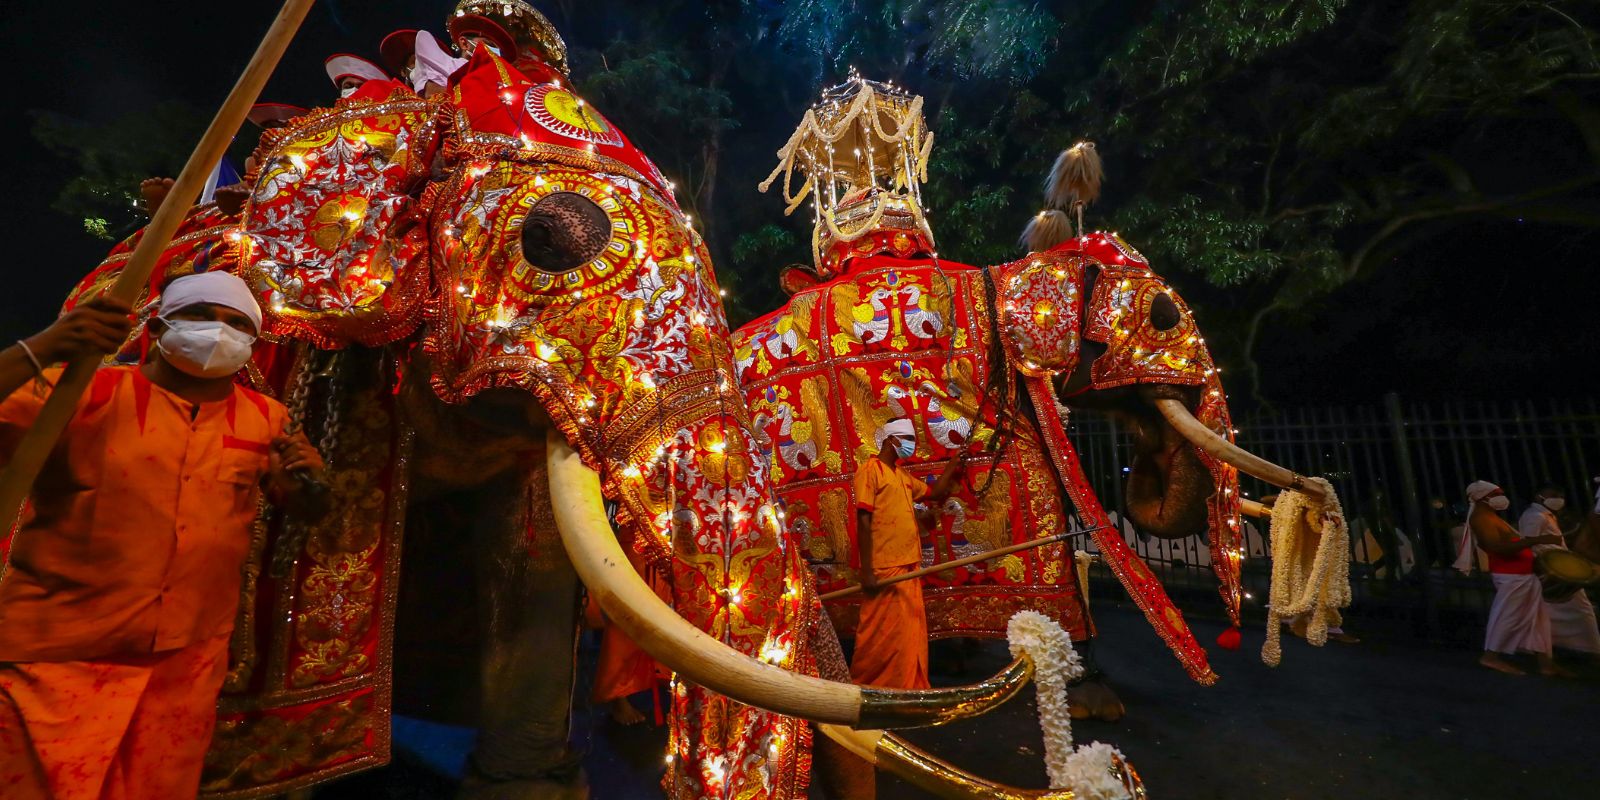 Elephants baring dalada karaduwa